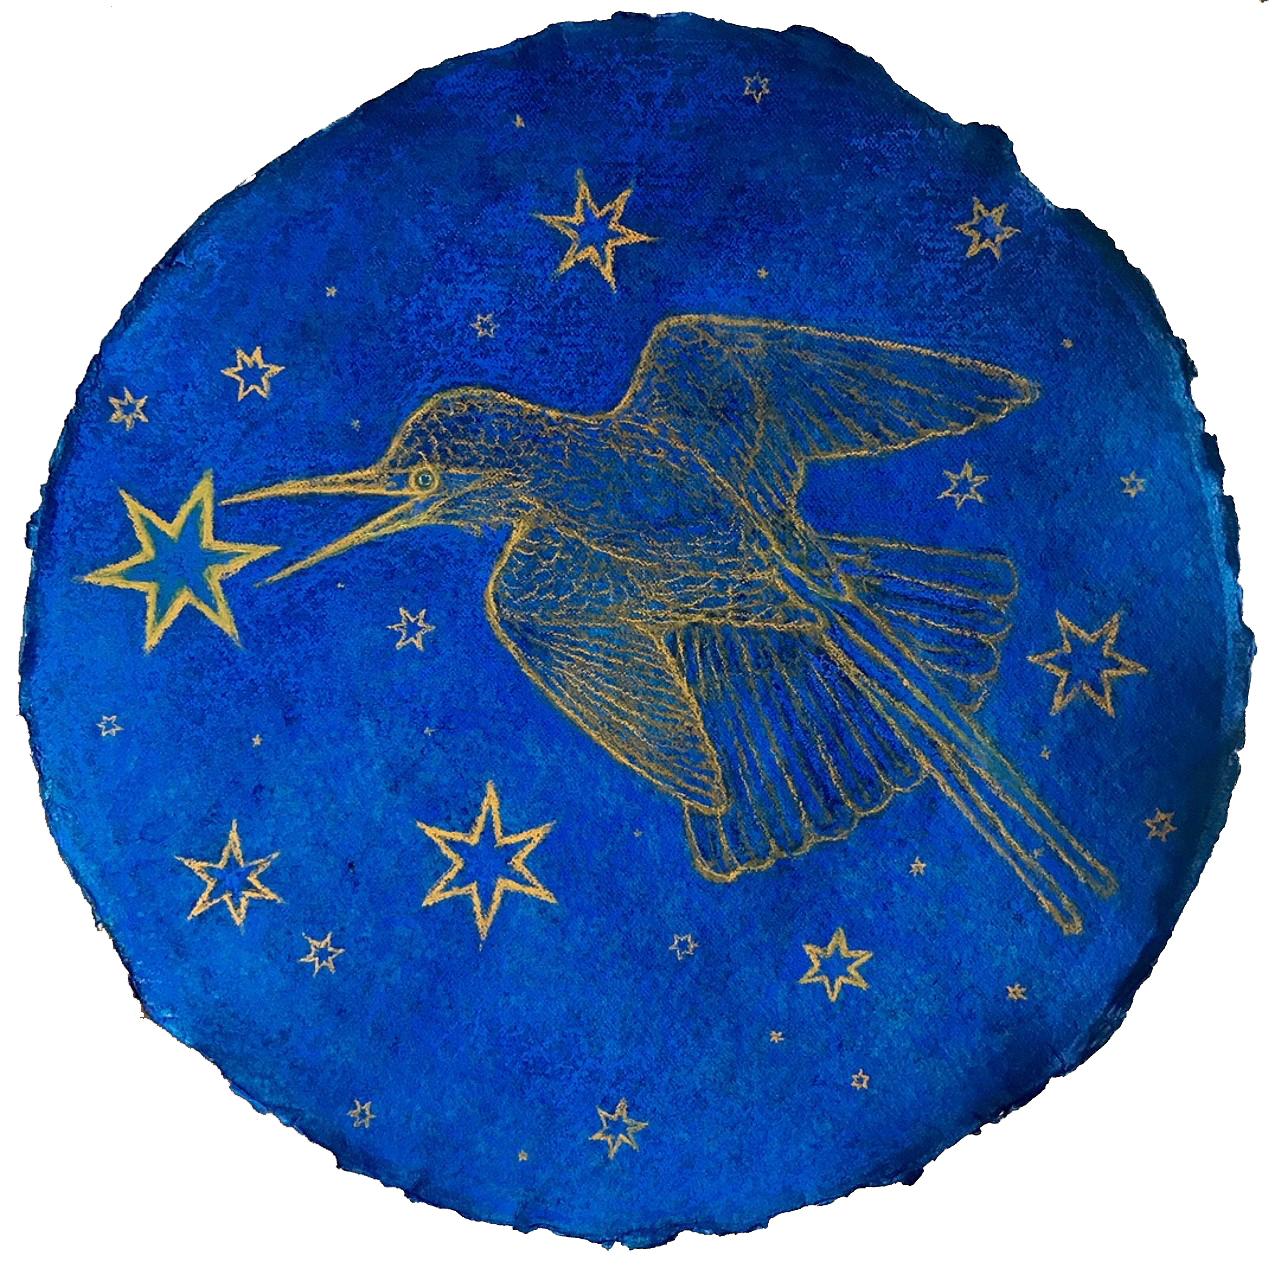 Nicholas Kahn & Richard Selesnick Animal Painting – Hummingbird Augury: Kobaltblaue pastellfarbene Zeichnung auf handgeschöpftem Papier mit goldenen Sternen